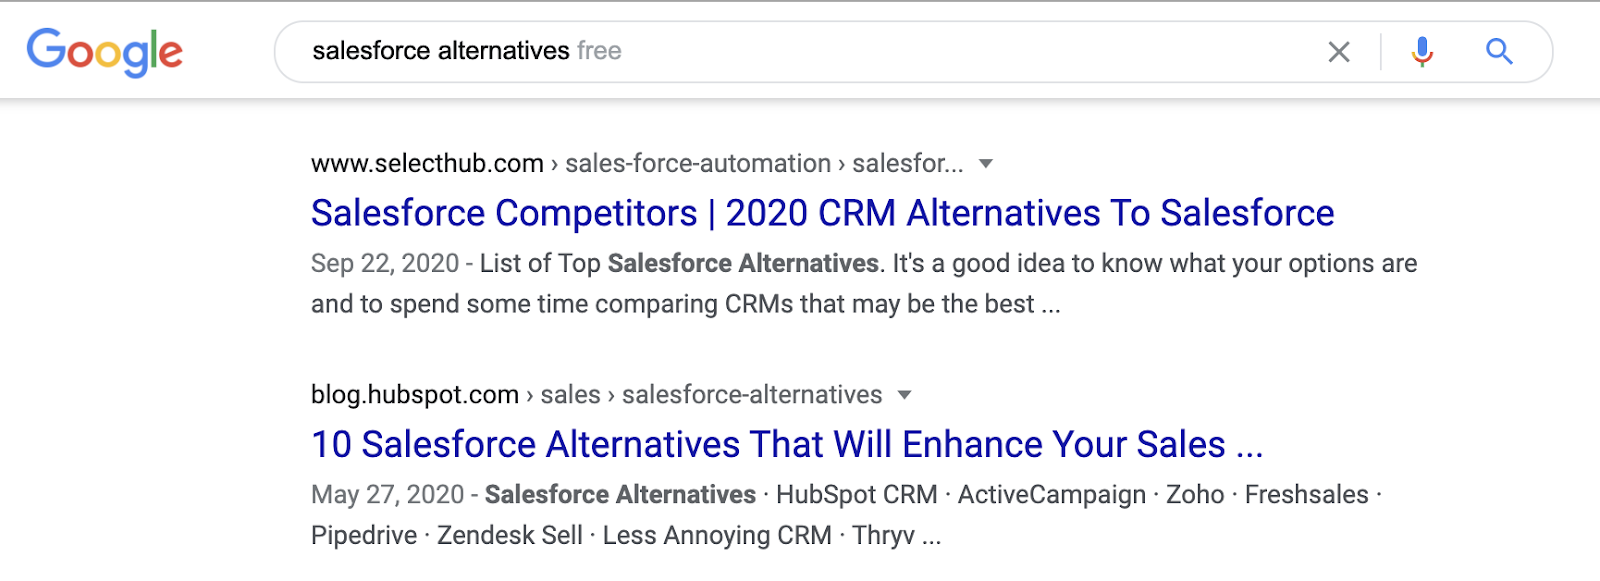 salesforce alternatives